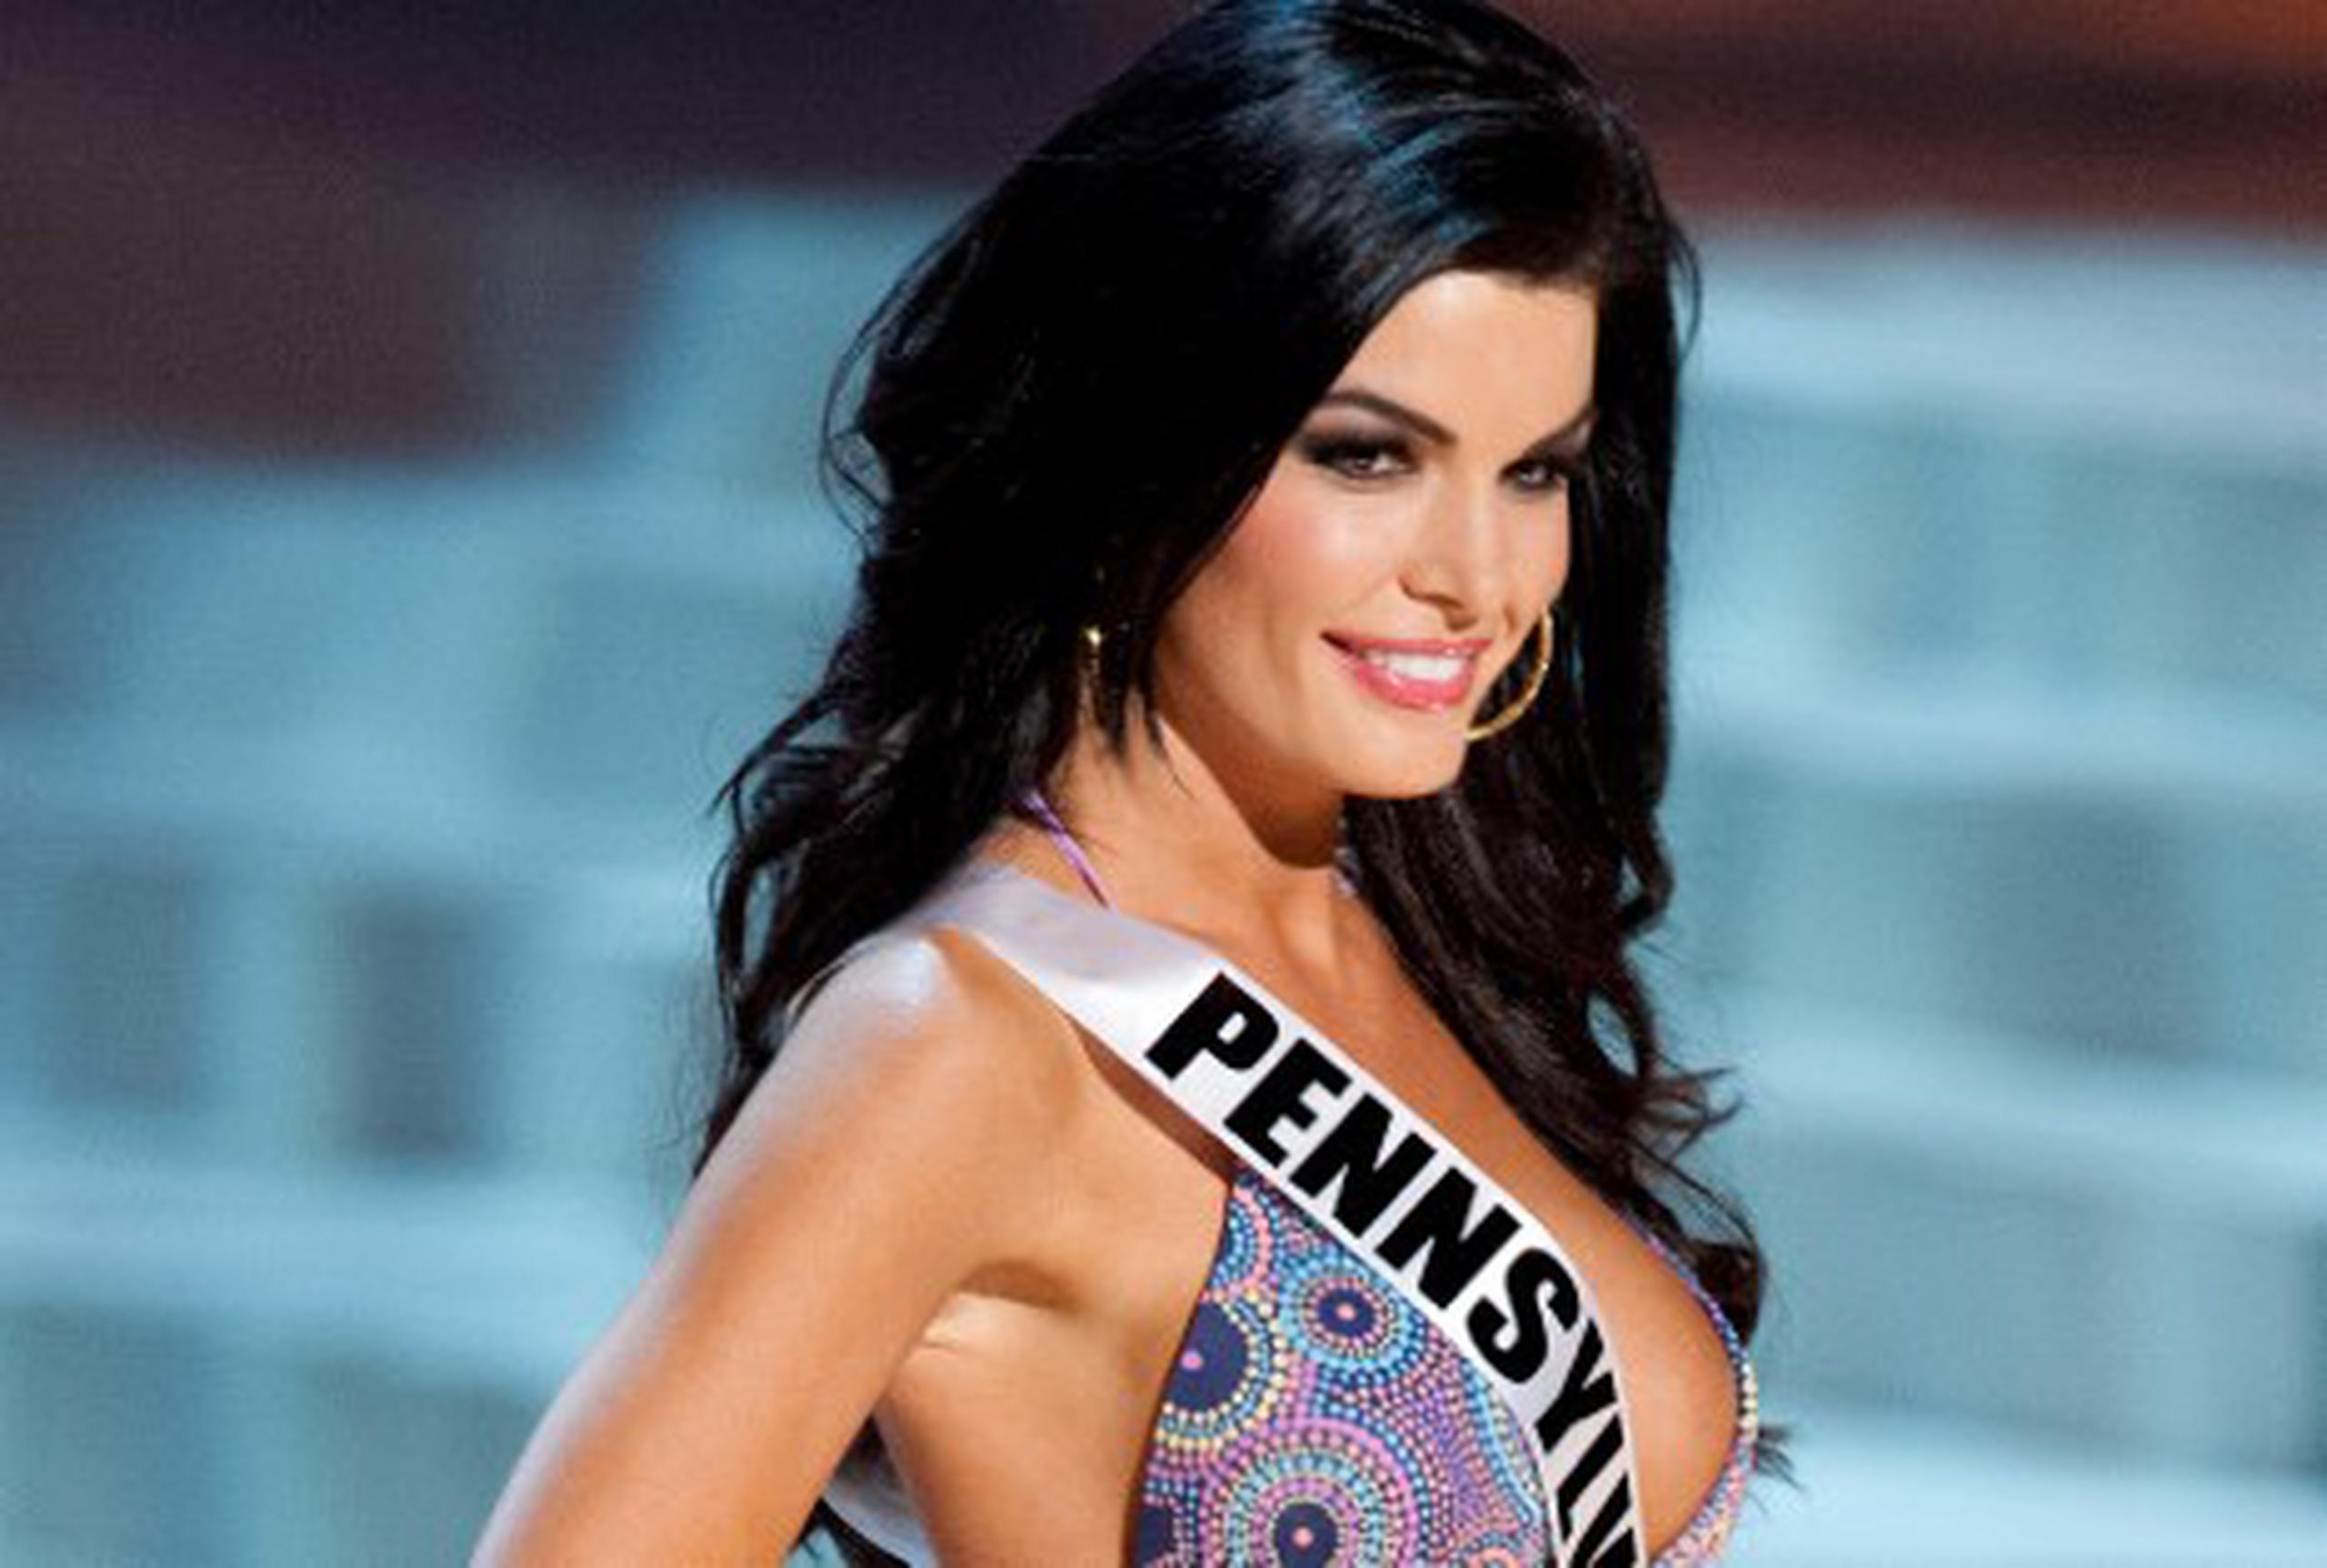 Miss Pensilvania deberá pagar 5 millones de dólares al certamen por difamación. (AP/Darren Decker)